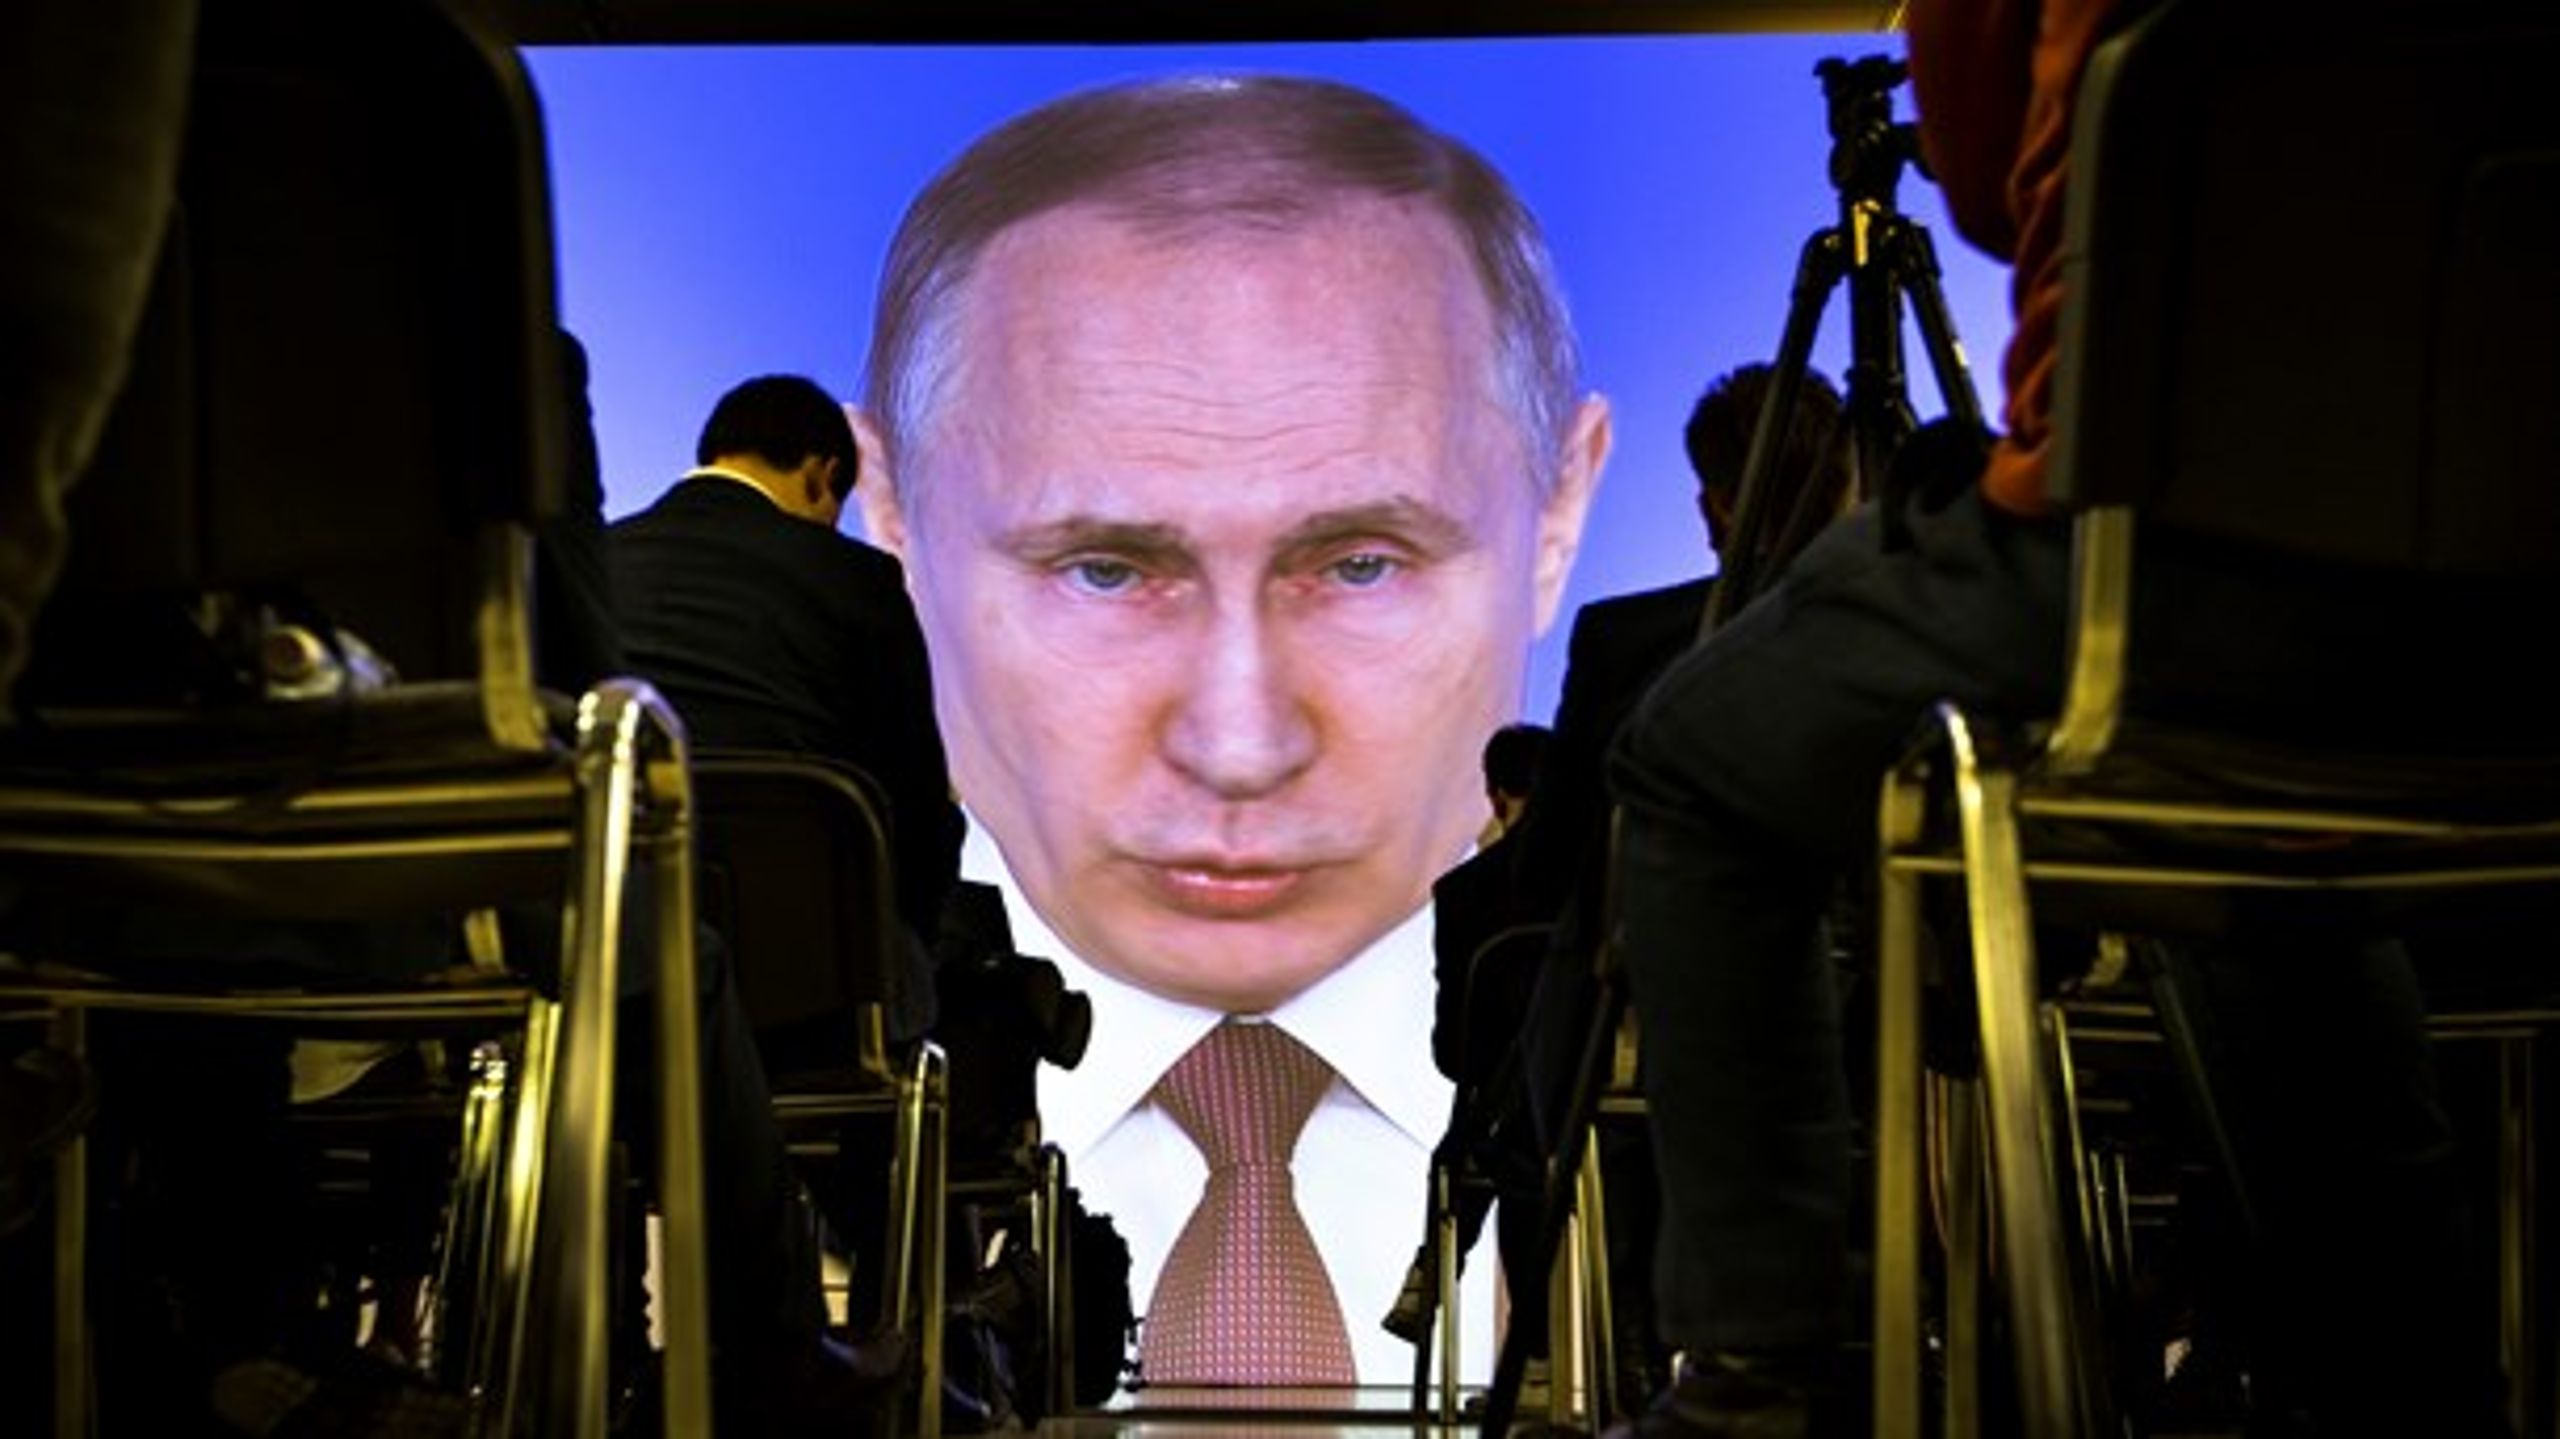 Vestens sanktioner har gjort ondt i Rusland, men
skabt større – ikke mindre – opbakning til Putin-regimet, skriver rådgiveren Gunnar Olesen.